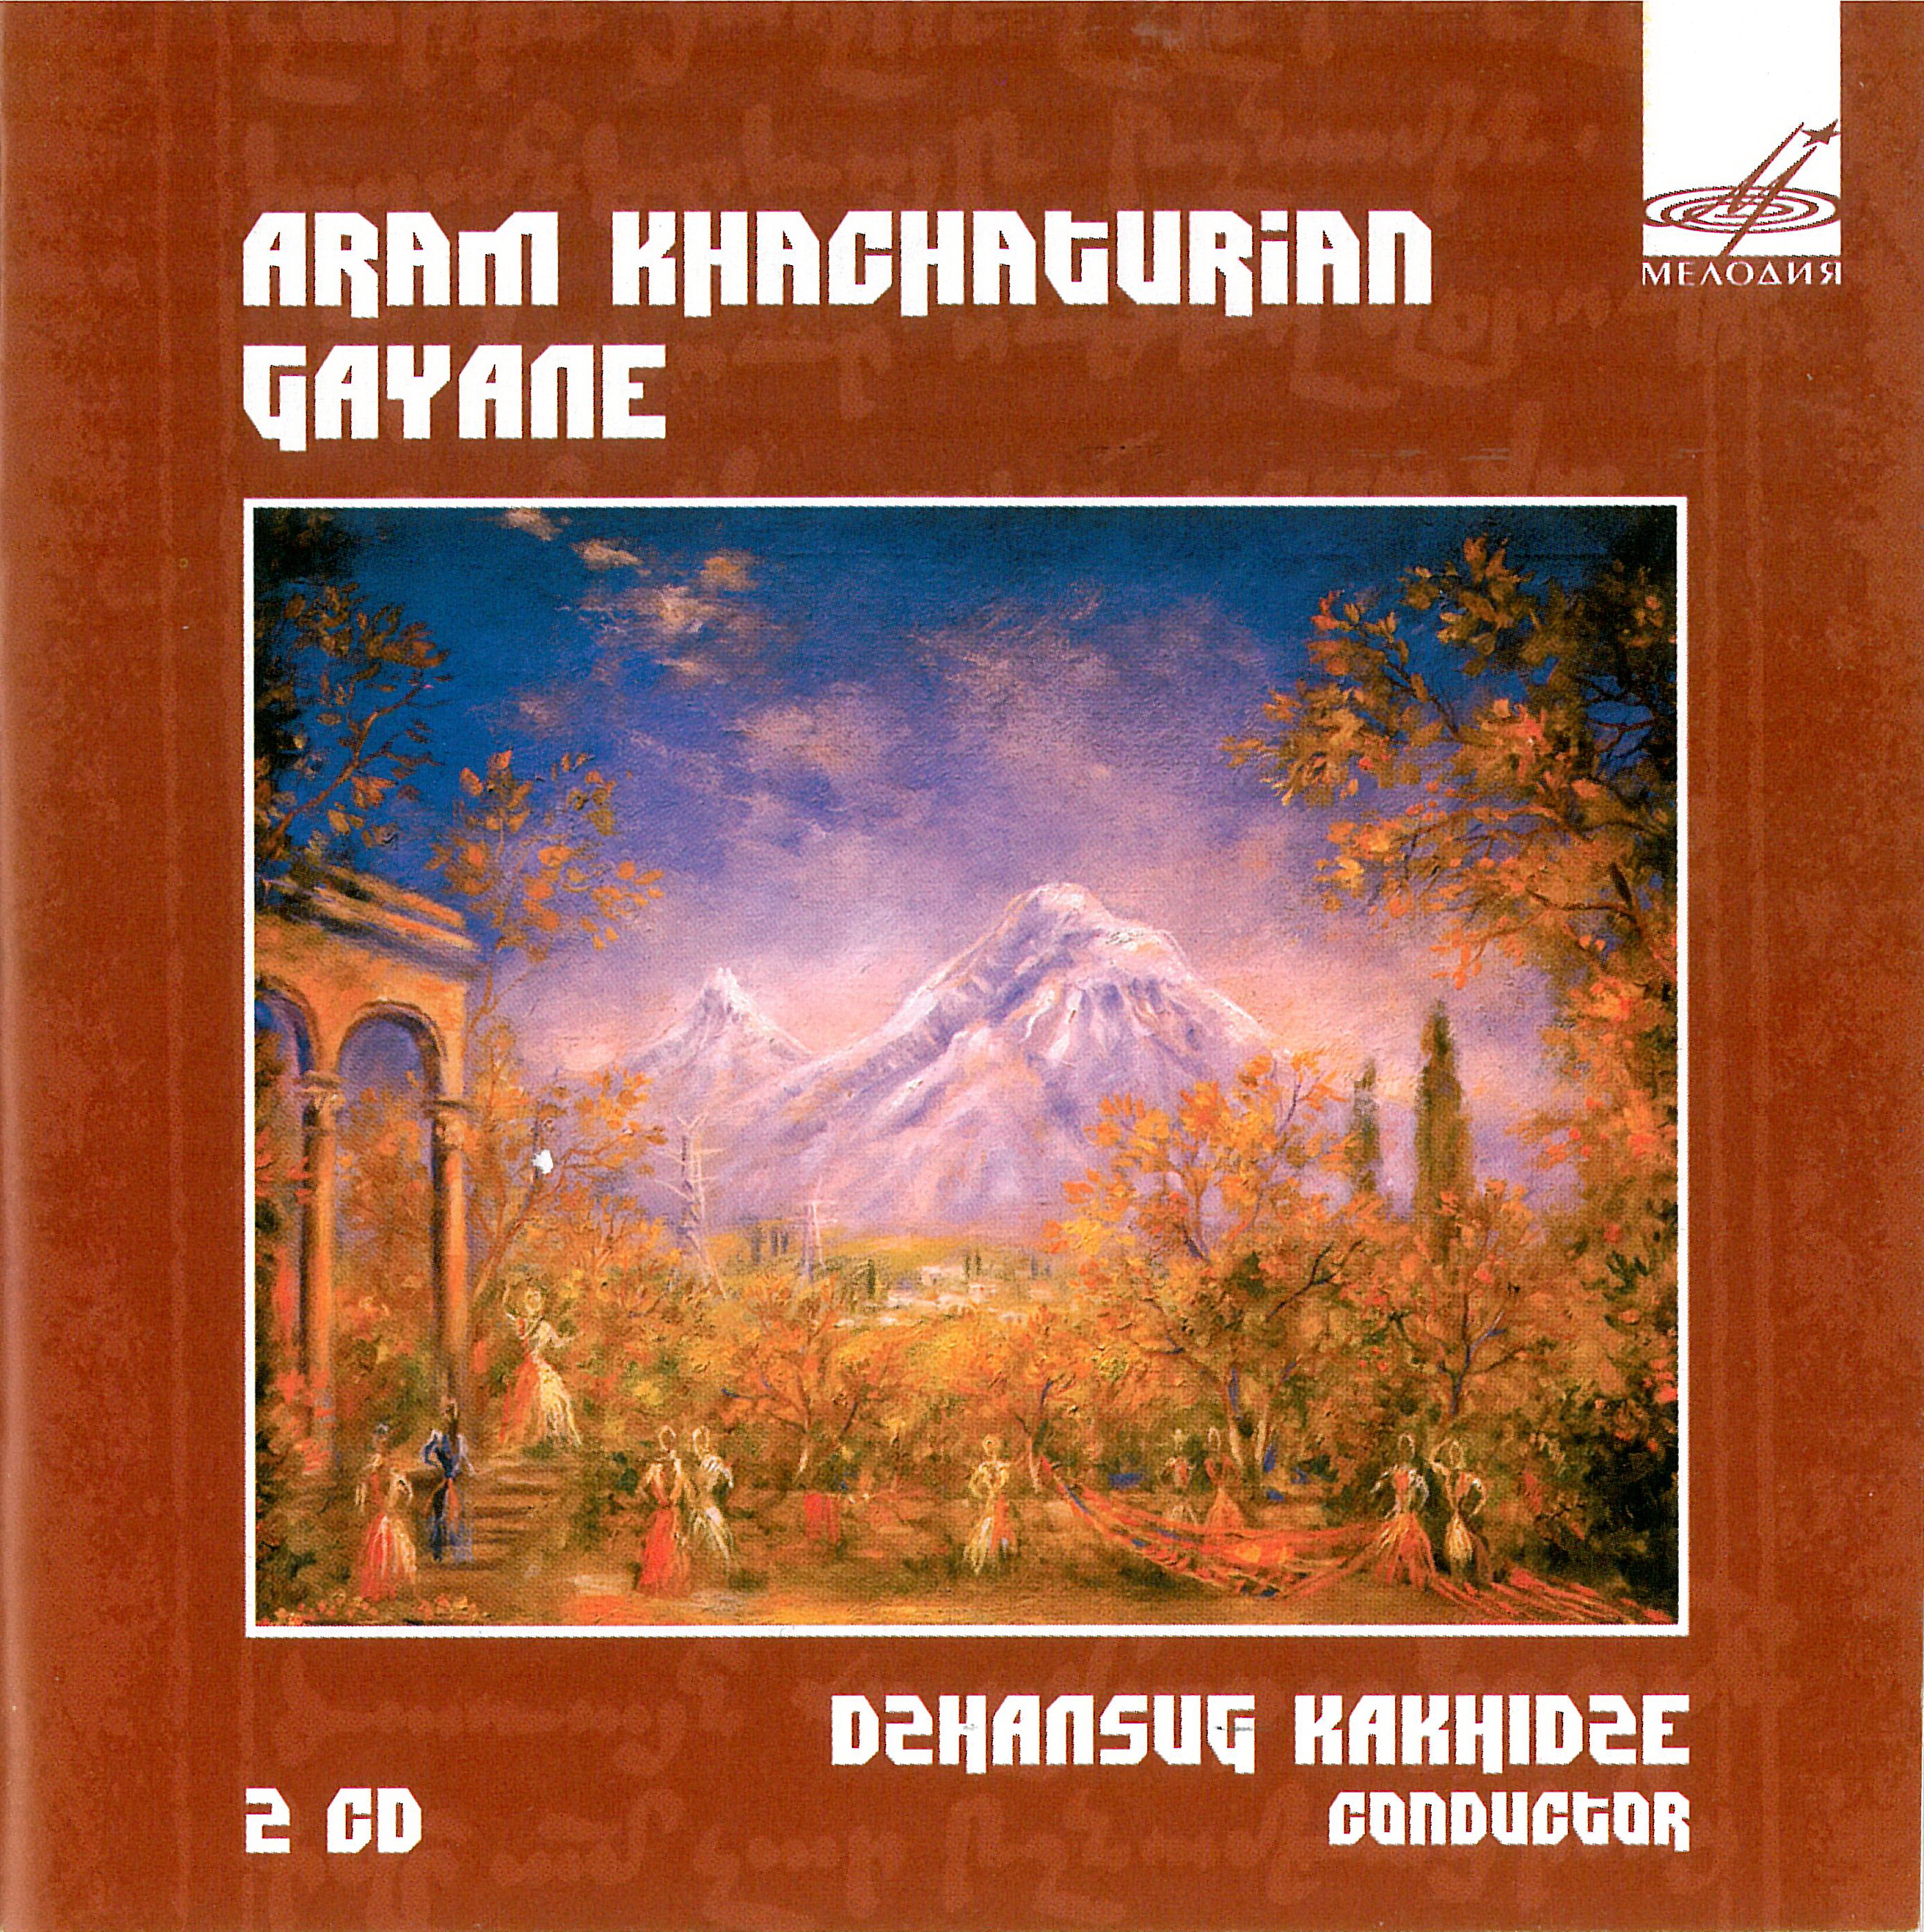 Dzhansug Kakhidze. Khachaturian. Gayane (2 CD)